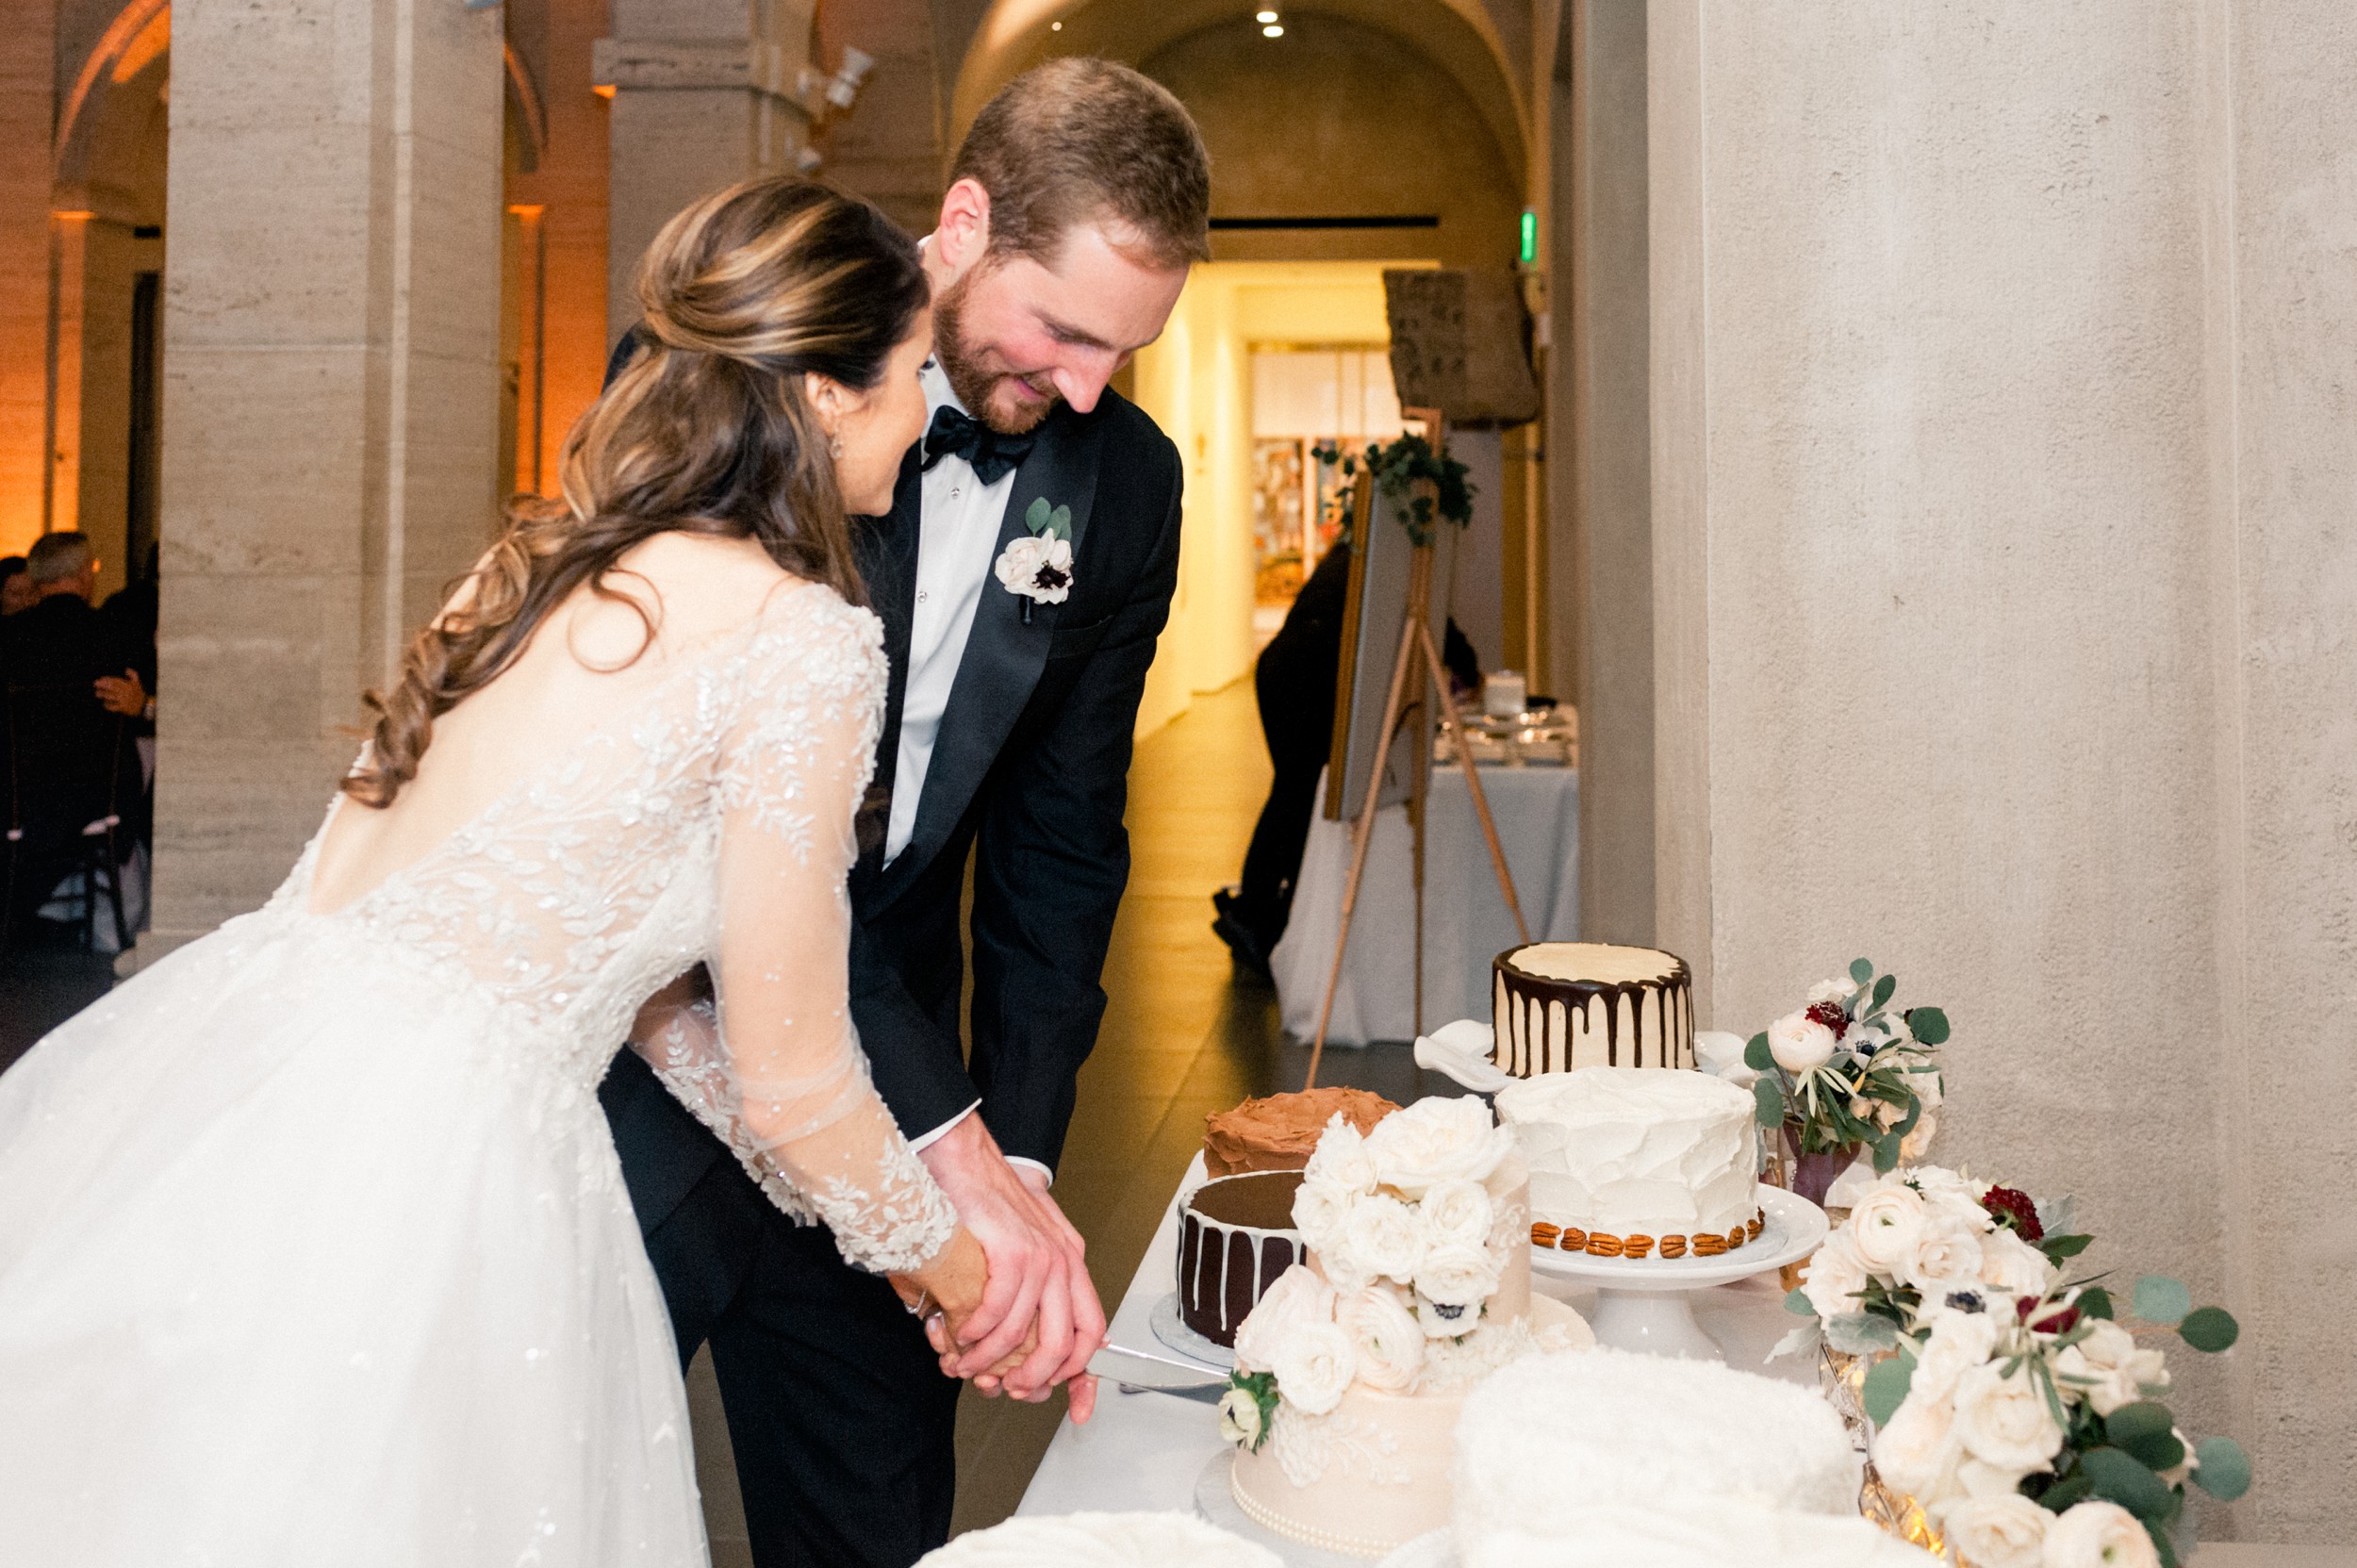 Boston wedding at Harvard Art Museum - cake cutting